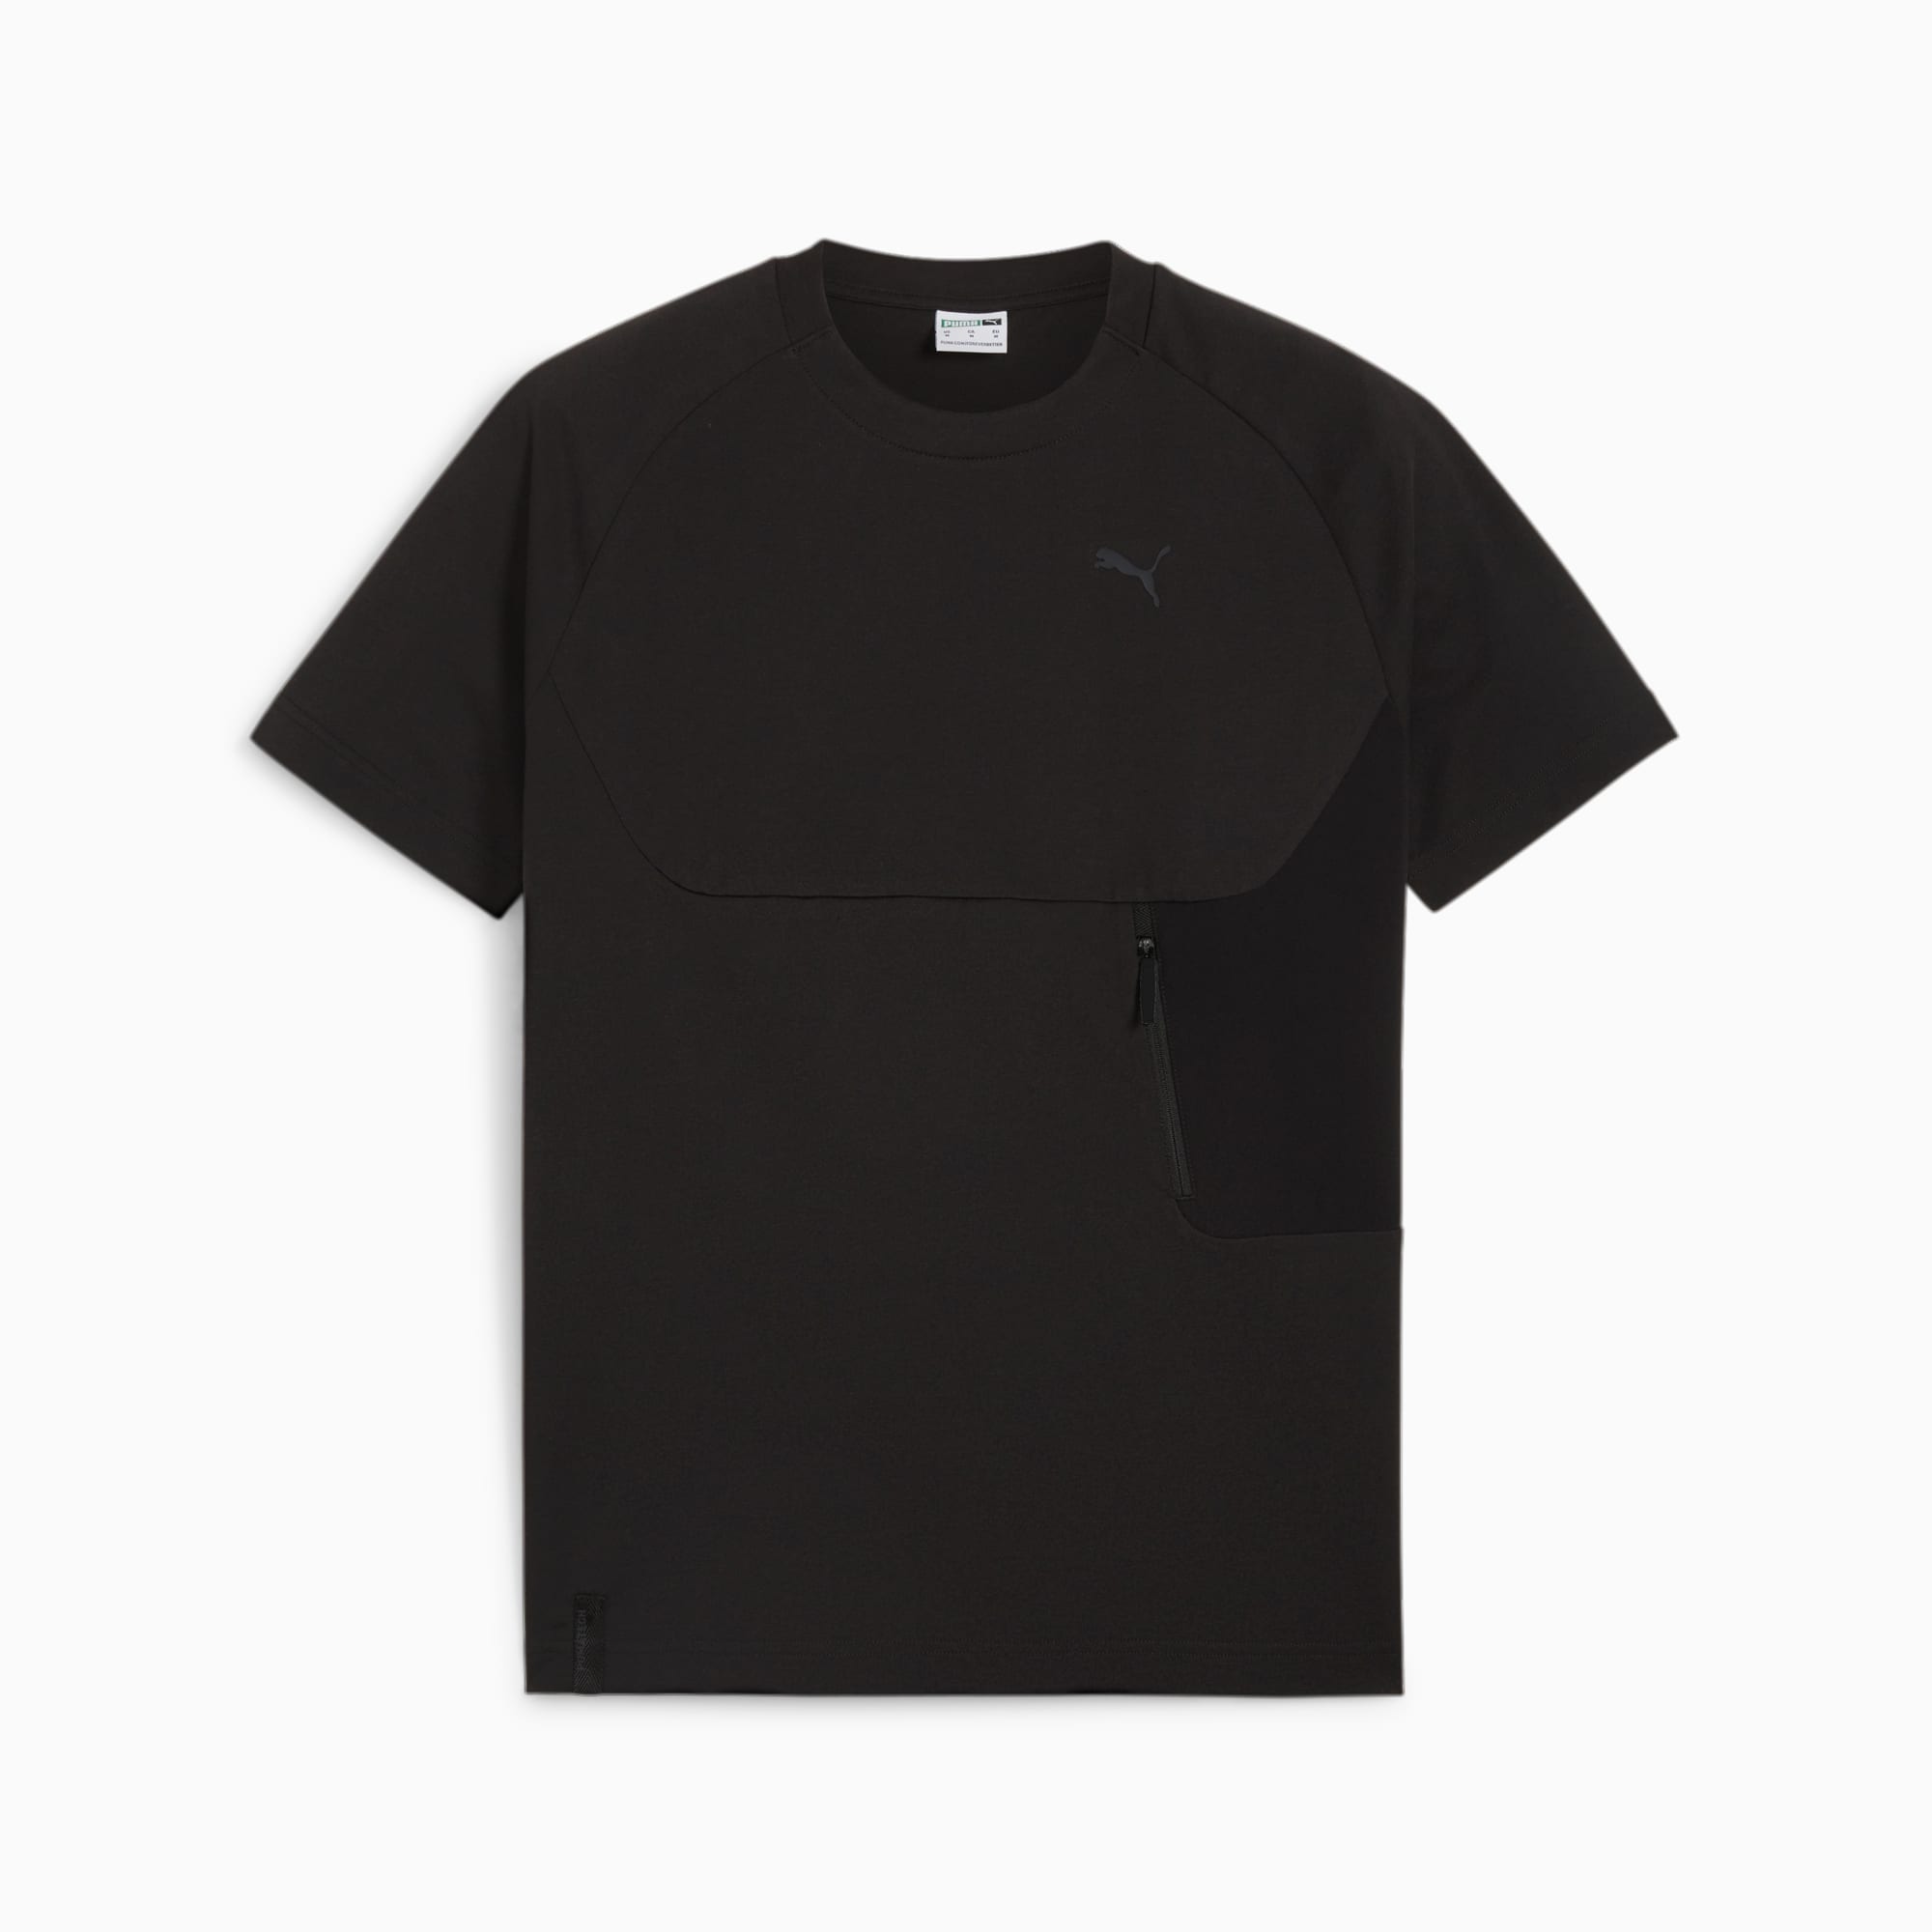 PUMATECH T-Shirt Mit Tasche Herren, Schwarz, Größe: XL, Kleidung